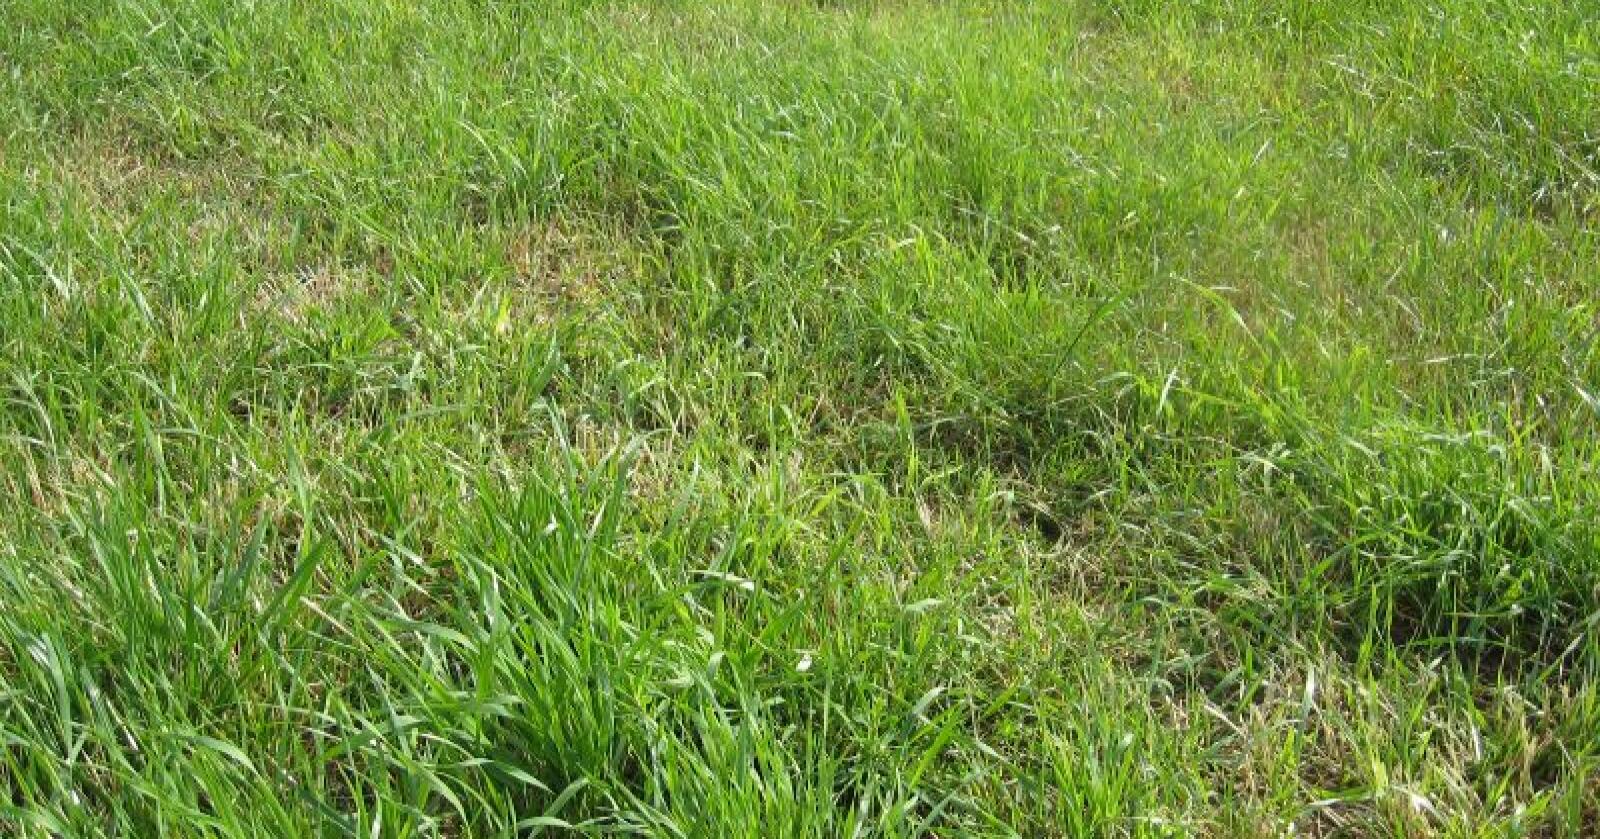 Nå er det store tørkeskader på graset mange steder. Arkivfoto: Norsk Landbruk